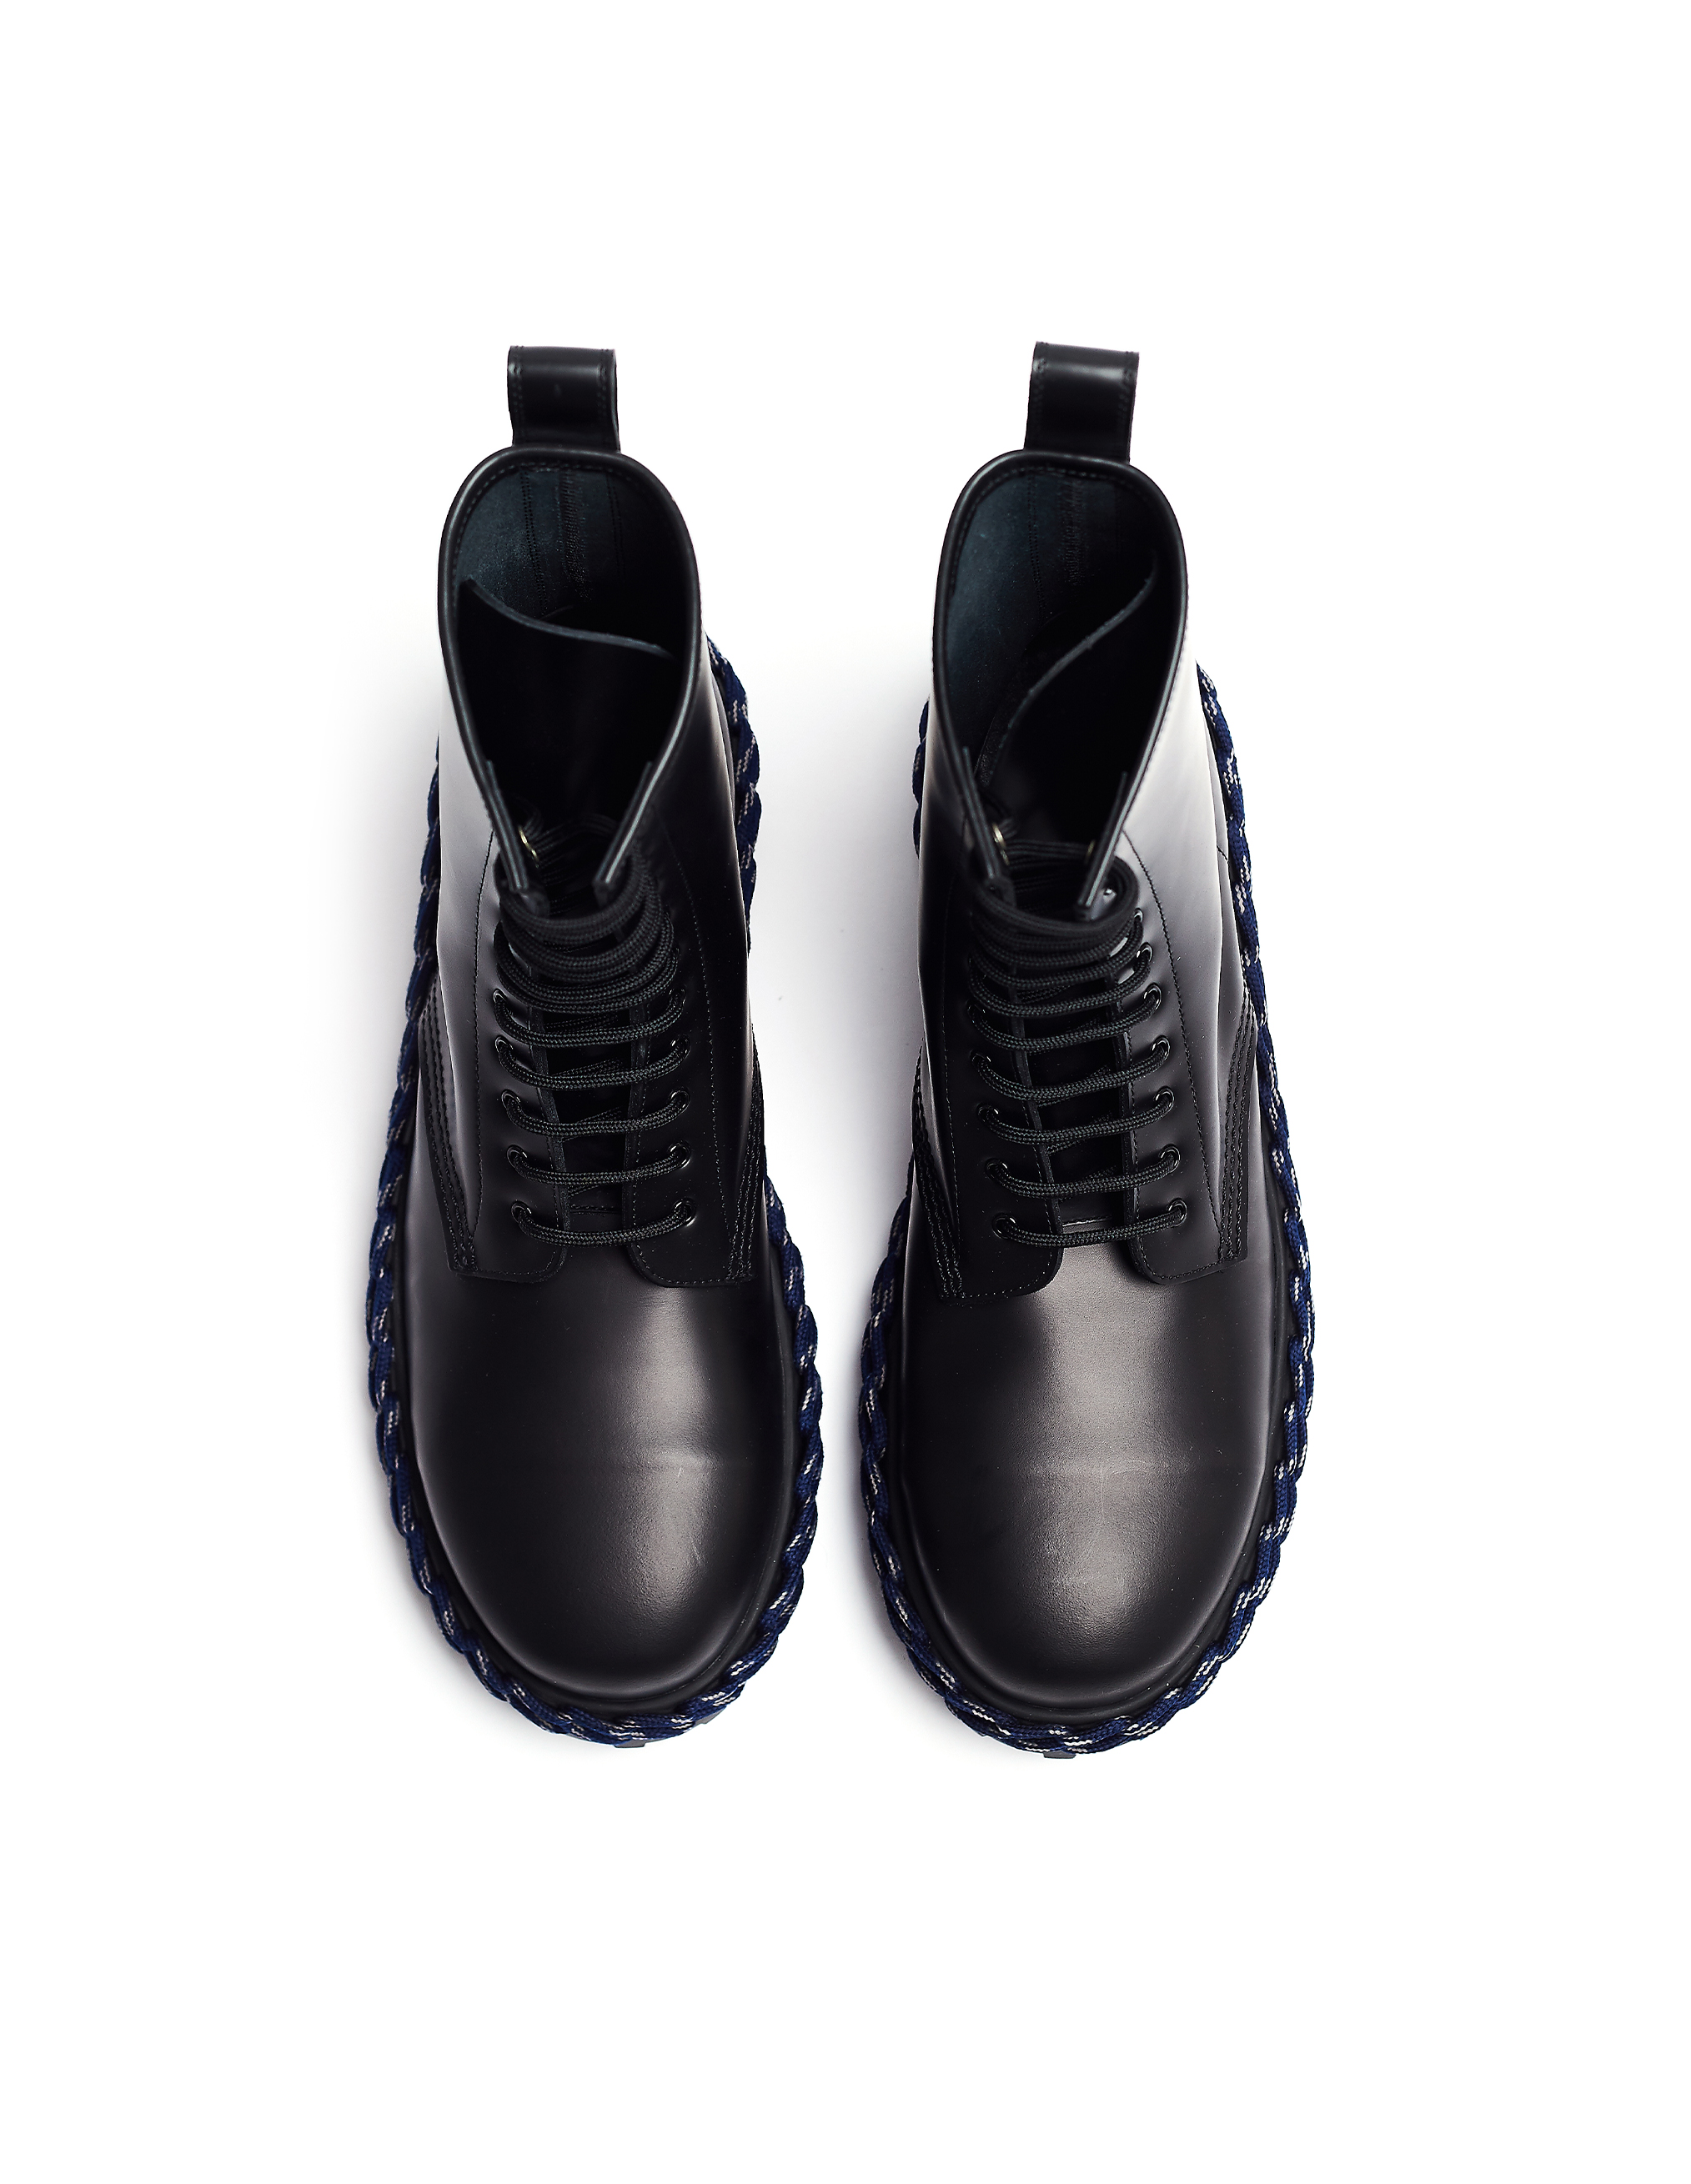 Кожаные ботинки с декоративной шнуровкой Balenciaga 530244/1007, размер sm;sm 530244/1007 - фото 4